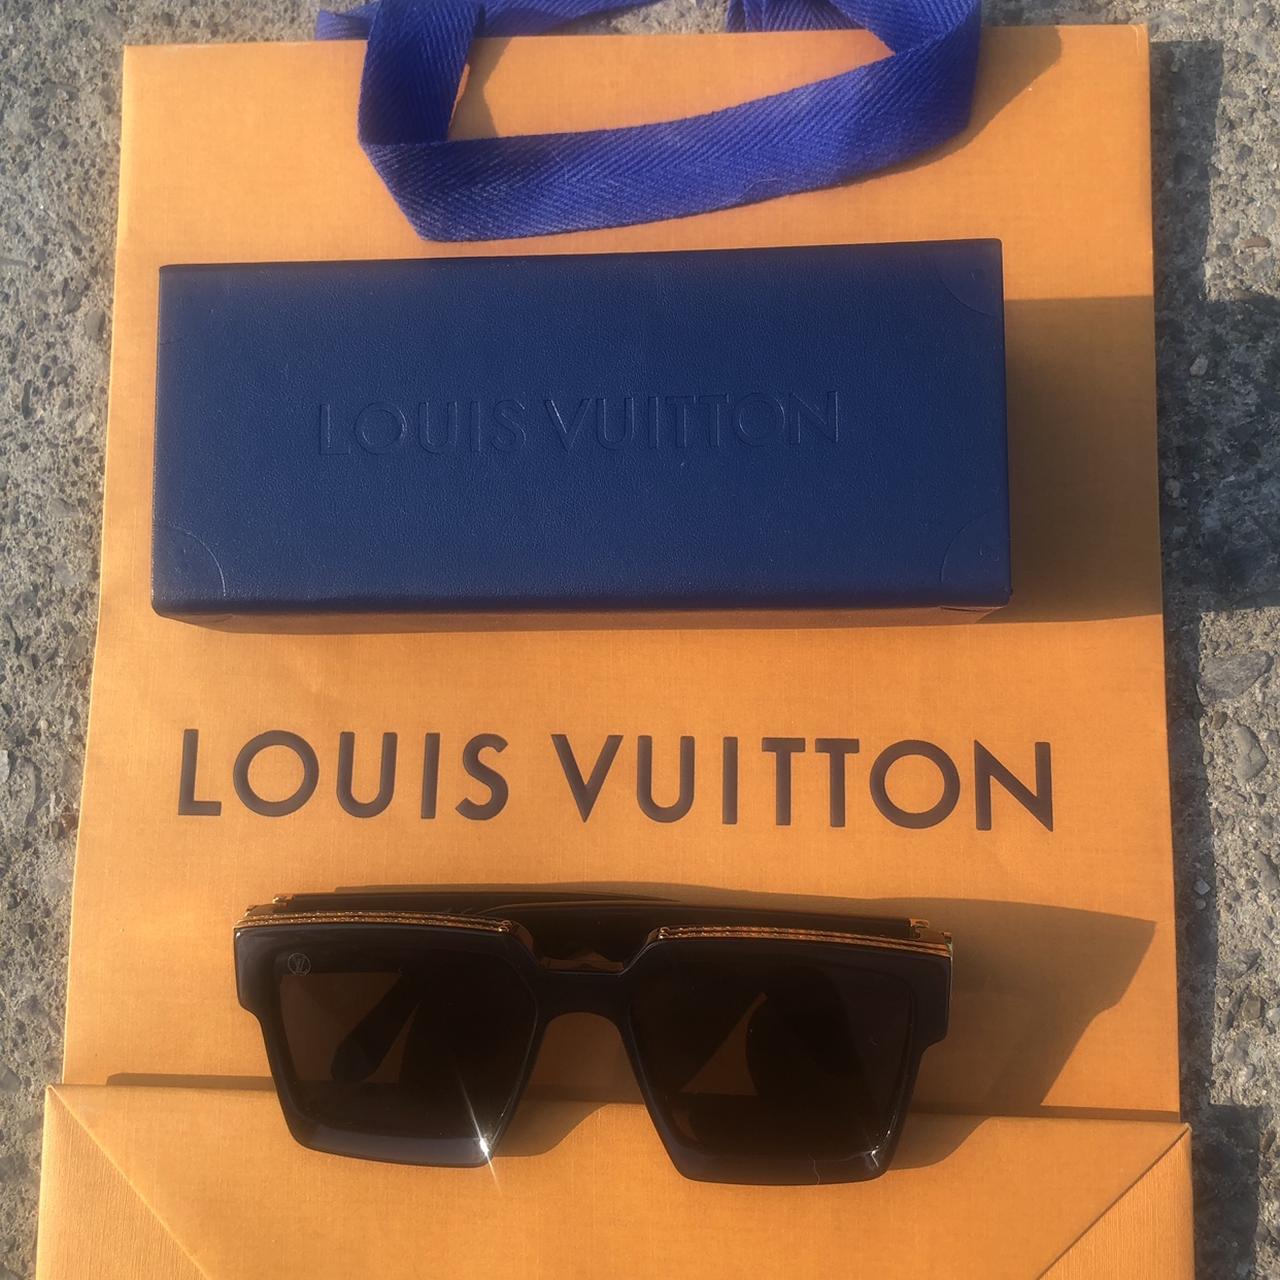 Rare) Louis Vuitton Chrome Millionaires Got these - Depop